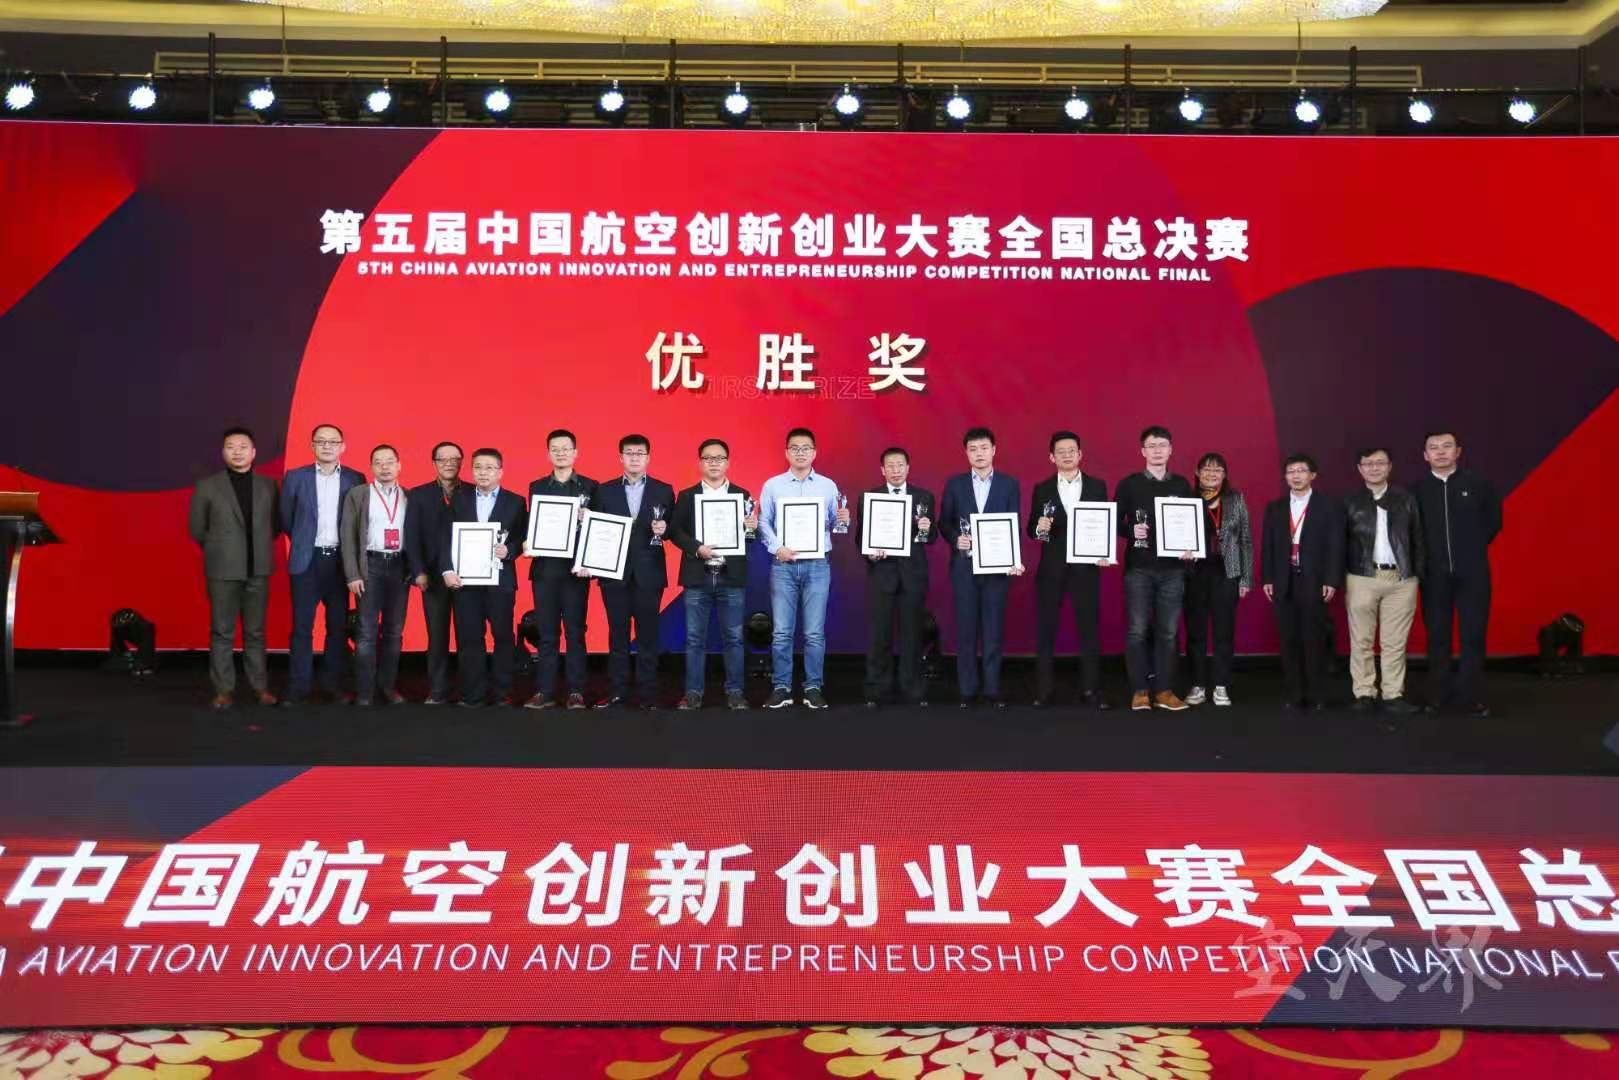 西空智造激光增材过程监控系统获得第五届中国航空创新创业大赛全国总决赛优胜奖